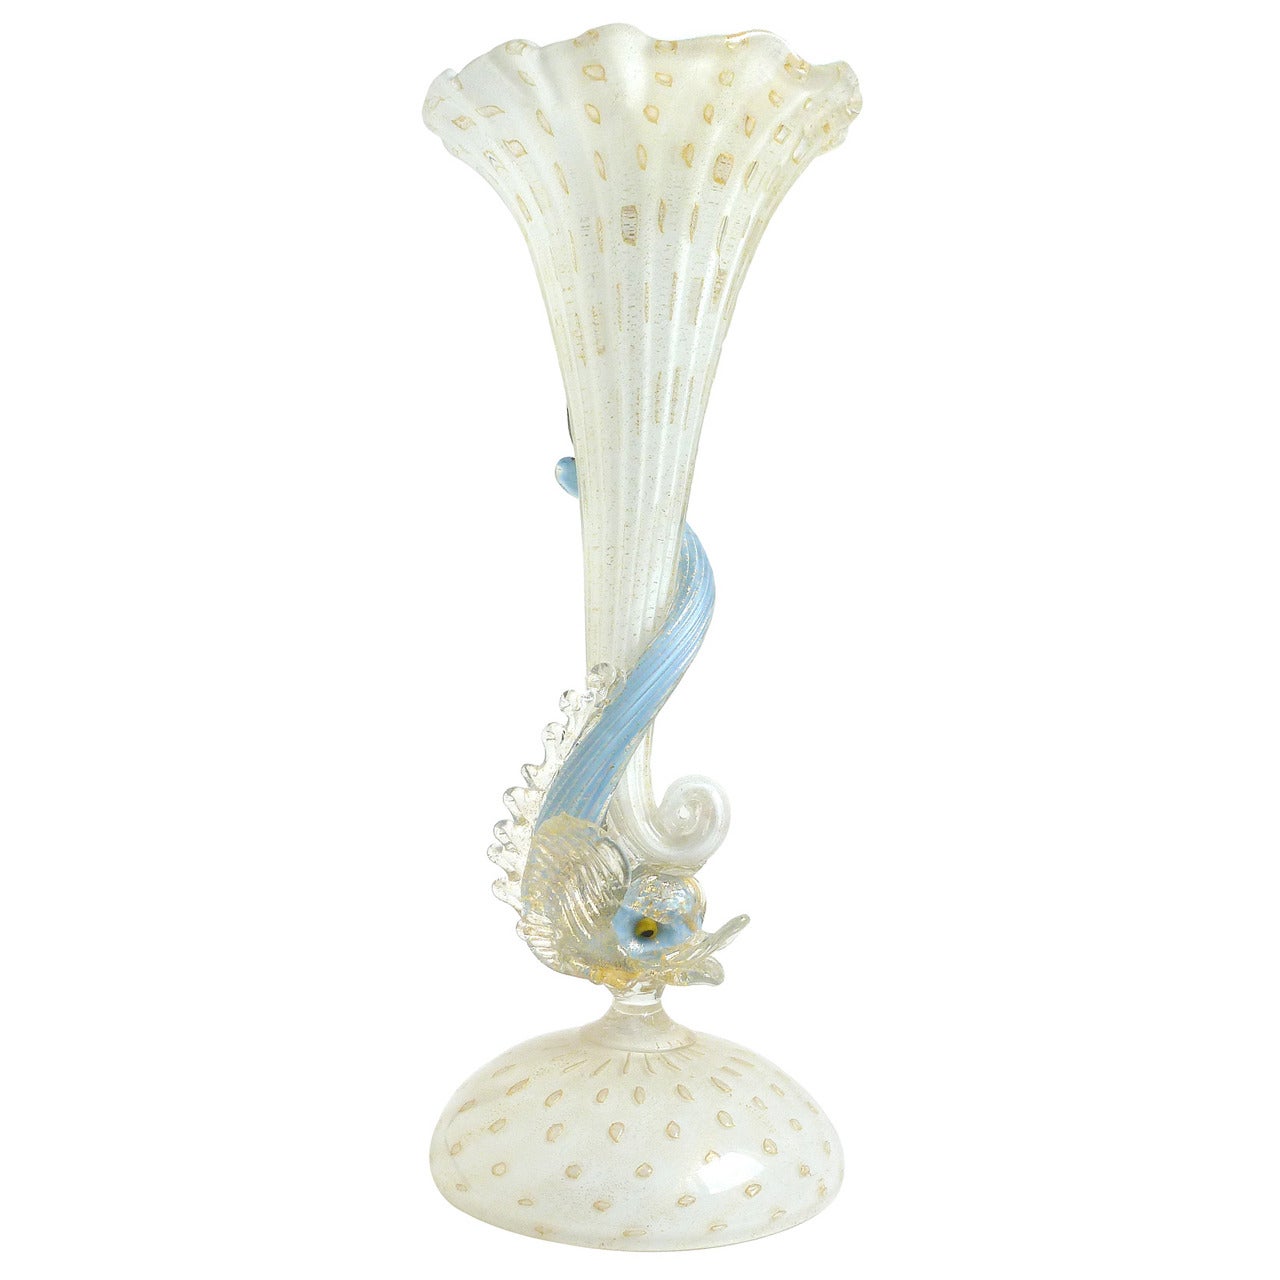 Salviati Murano White, Gold, Blue Fish Italian Art Glass Ruffled Flower Vase